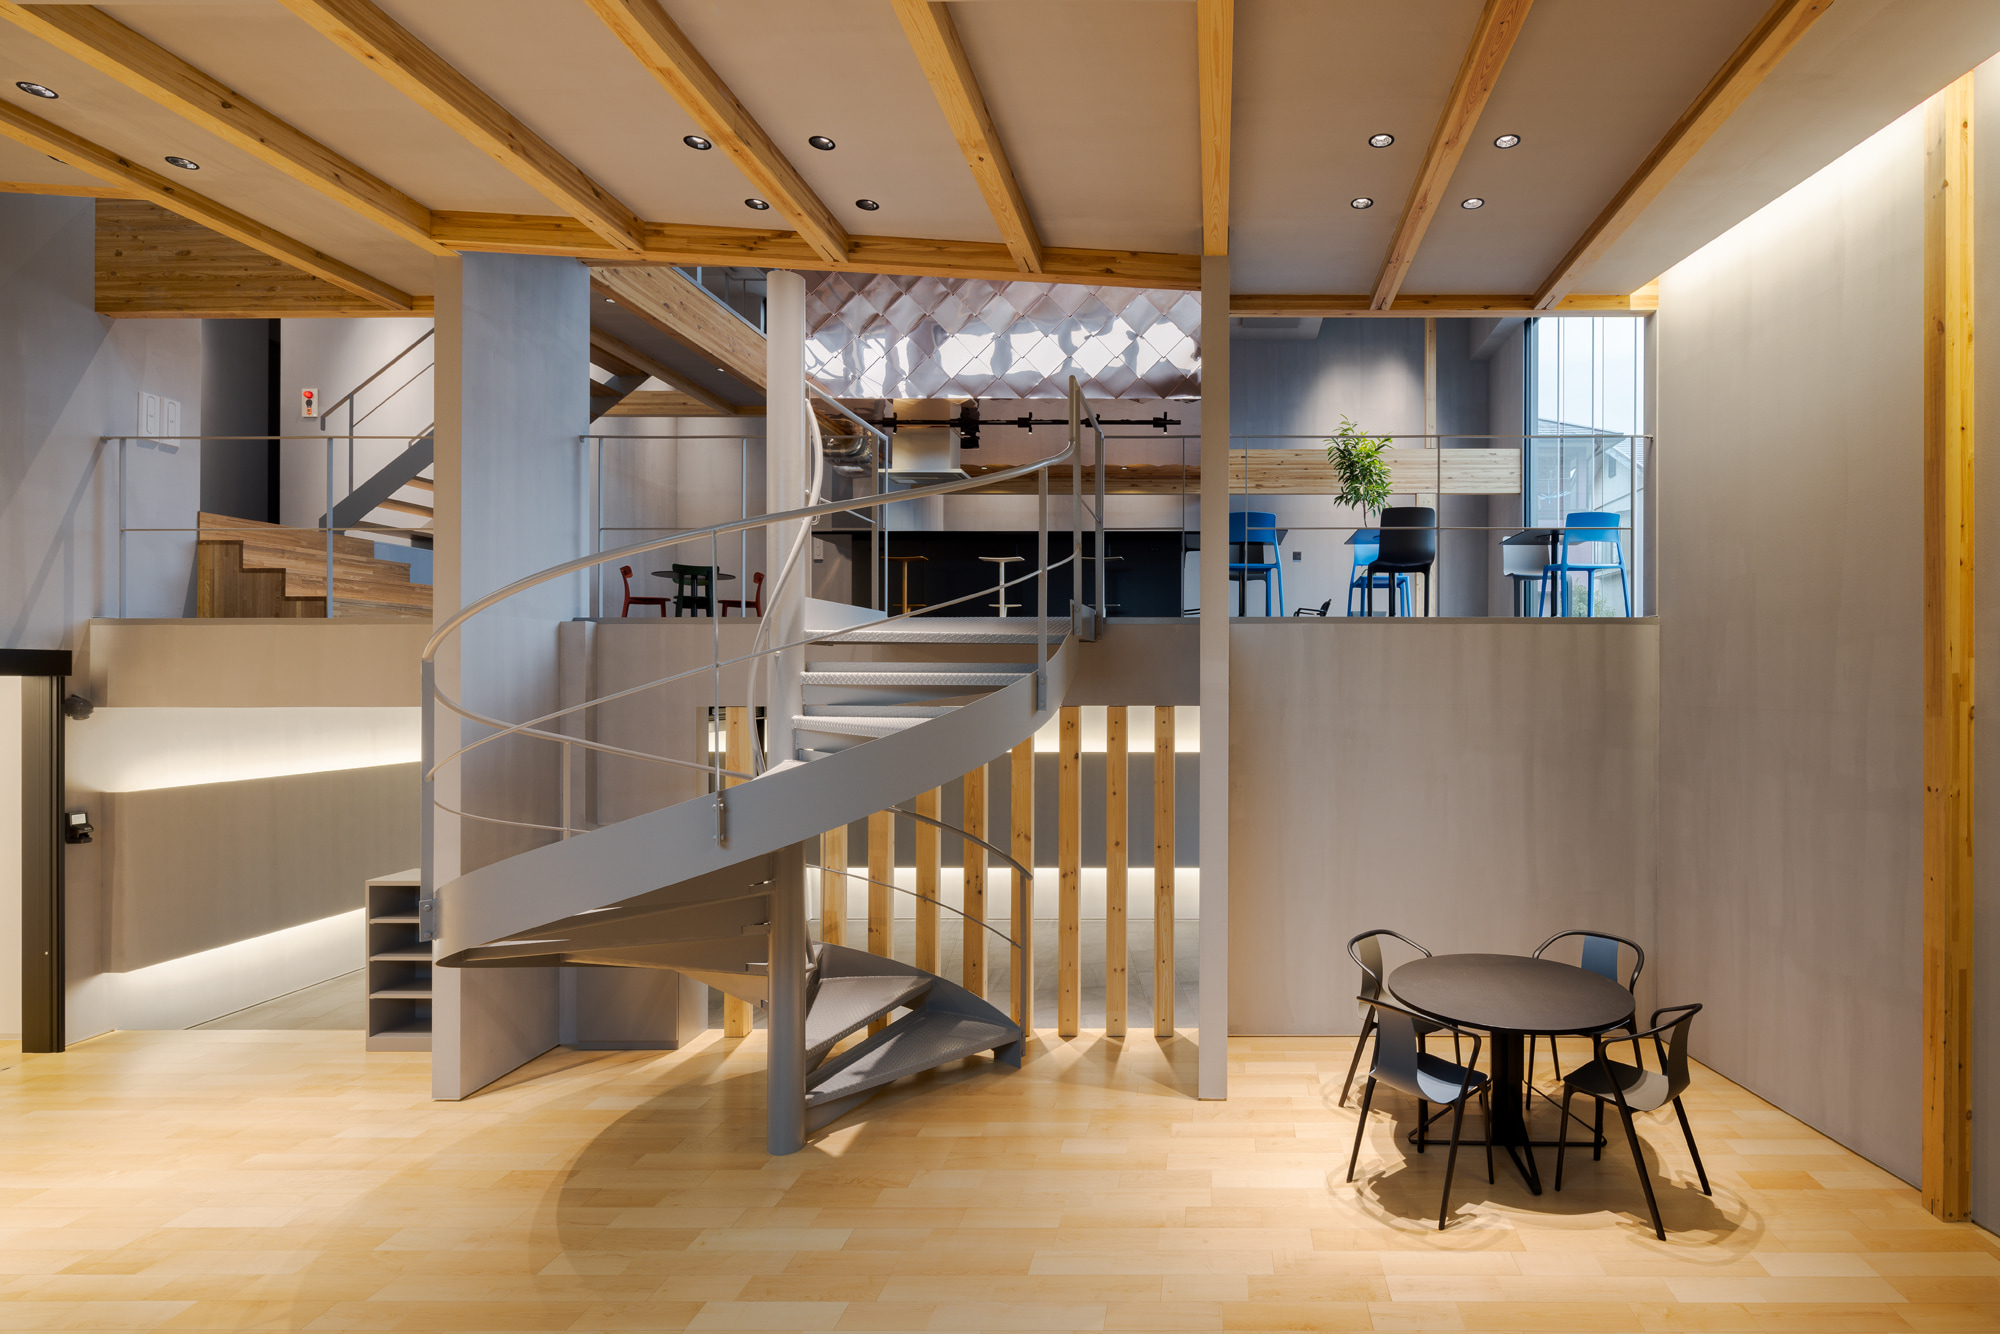 上の写真は、木造2階建て事務所ビルの事例です。  大開口に面して明るい大空間があり、様々なボリュームが重層する空間構成になっています。  ＜画像＞  スキップフロアの構成となっており、いろいろな広さや高さを体感できる建築です。  印象的な螺旋階段が空間をつなぎます。  関連記事：アクシスホールディングス新社屋